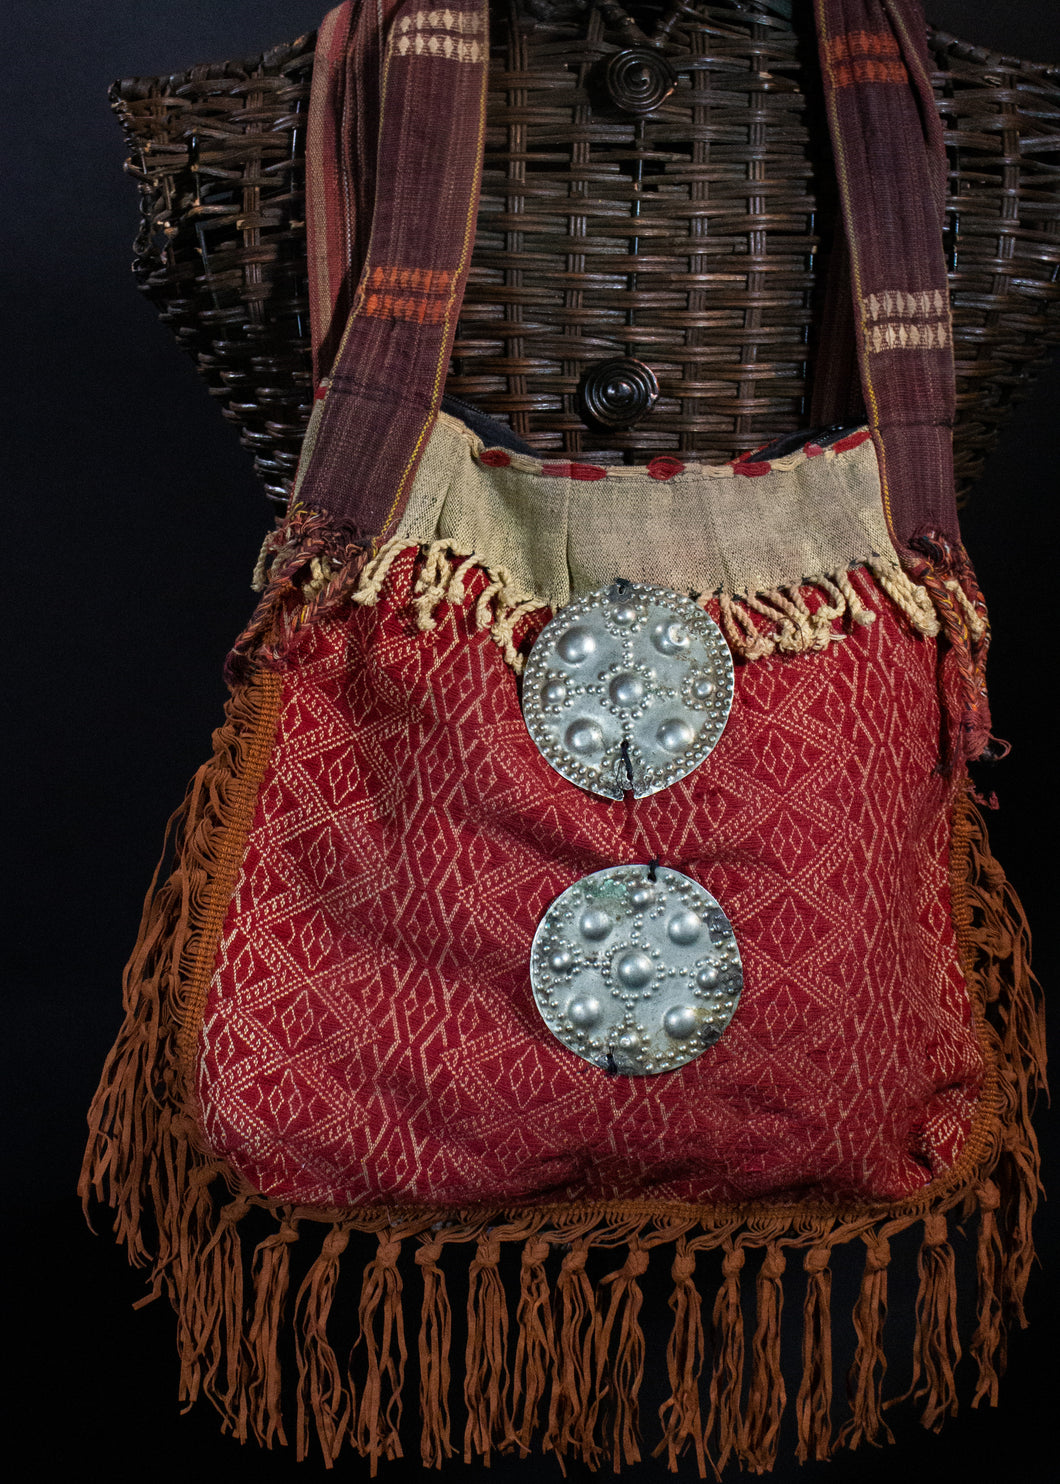 Moroccan Handbag and Silver Ornamentation